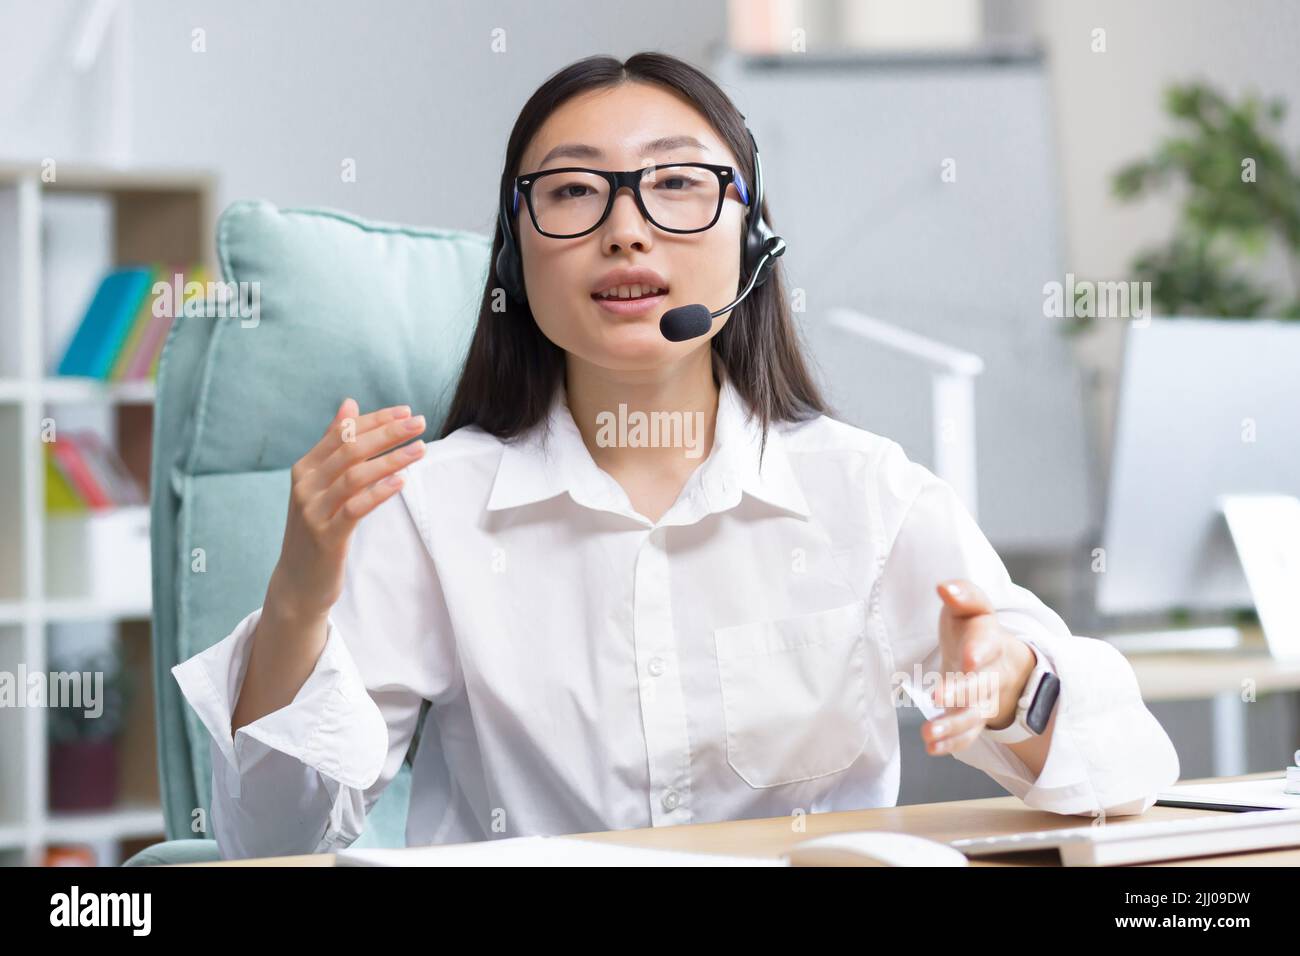 Online-Fernunterricht. Junge schöne asiatische Lehrerin mit Kopfhörern und Brille sitzt an einem Tisch an einem Computer und unterrichtet online eine Klassenstunde. Stockfoto